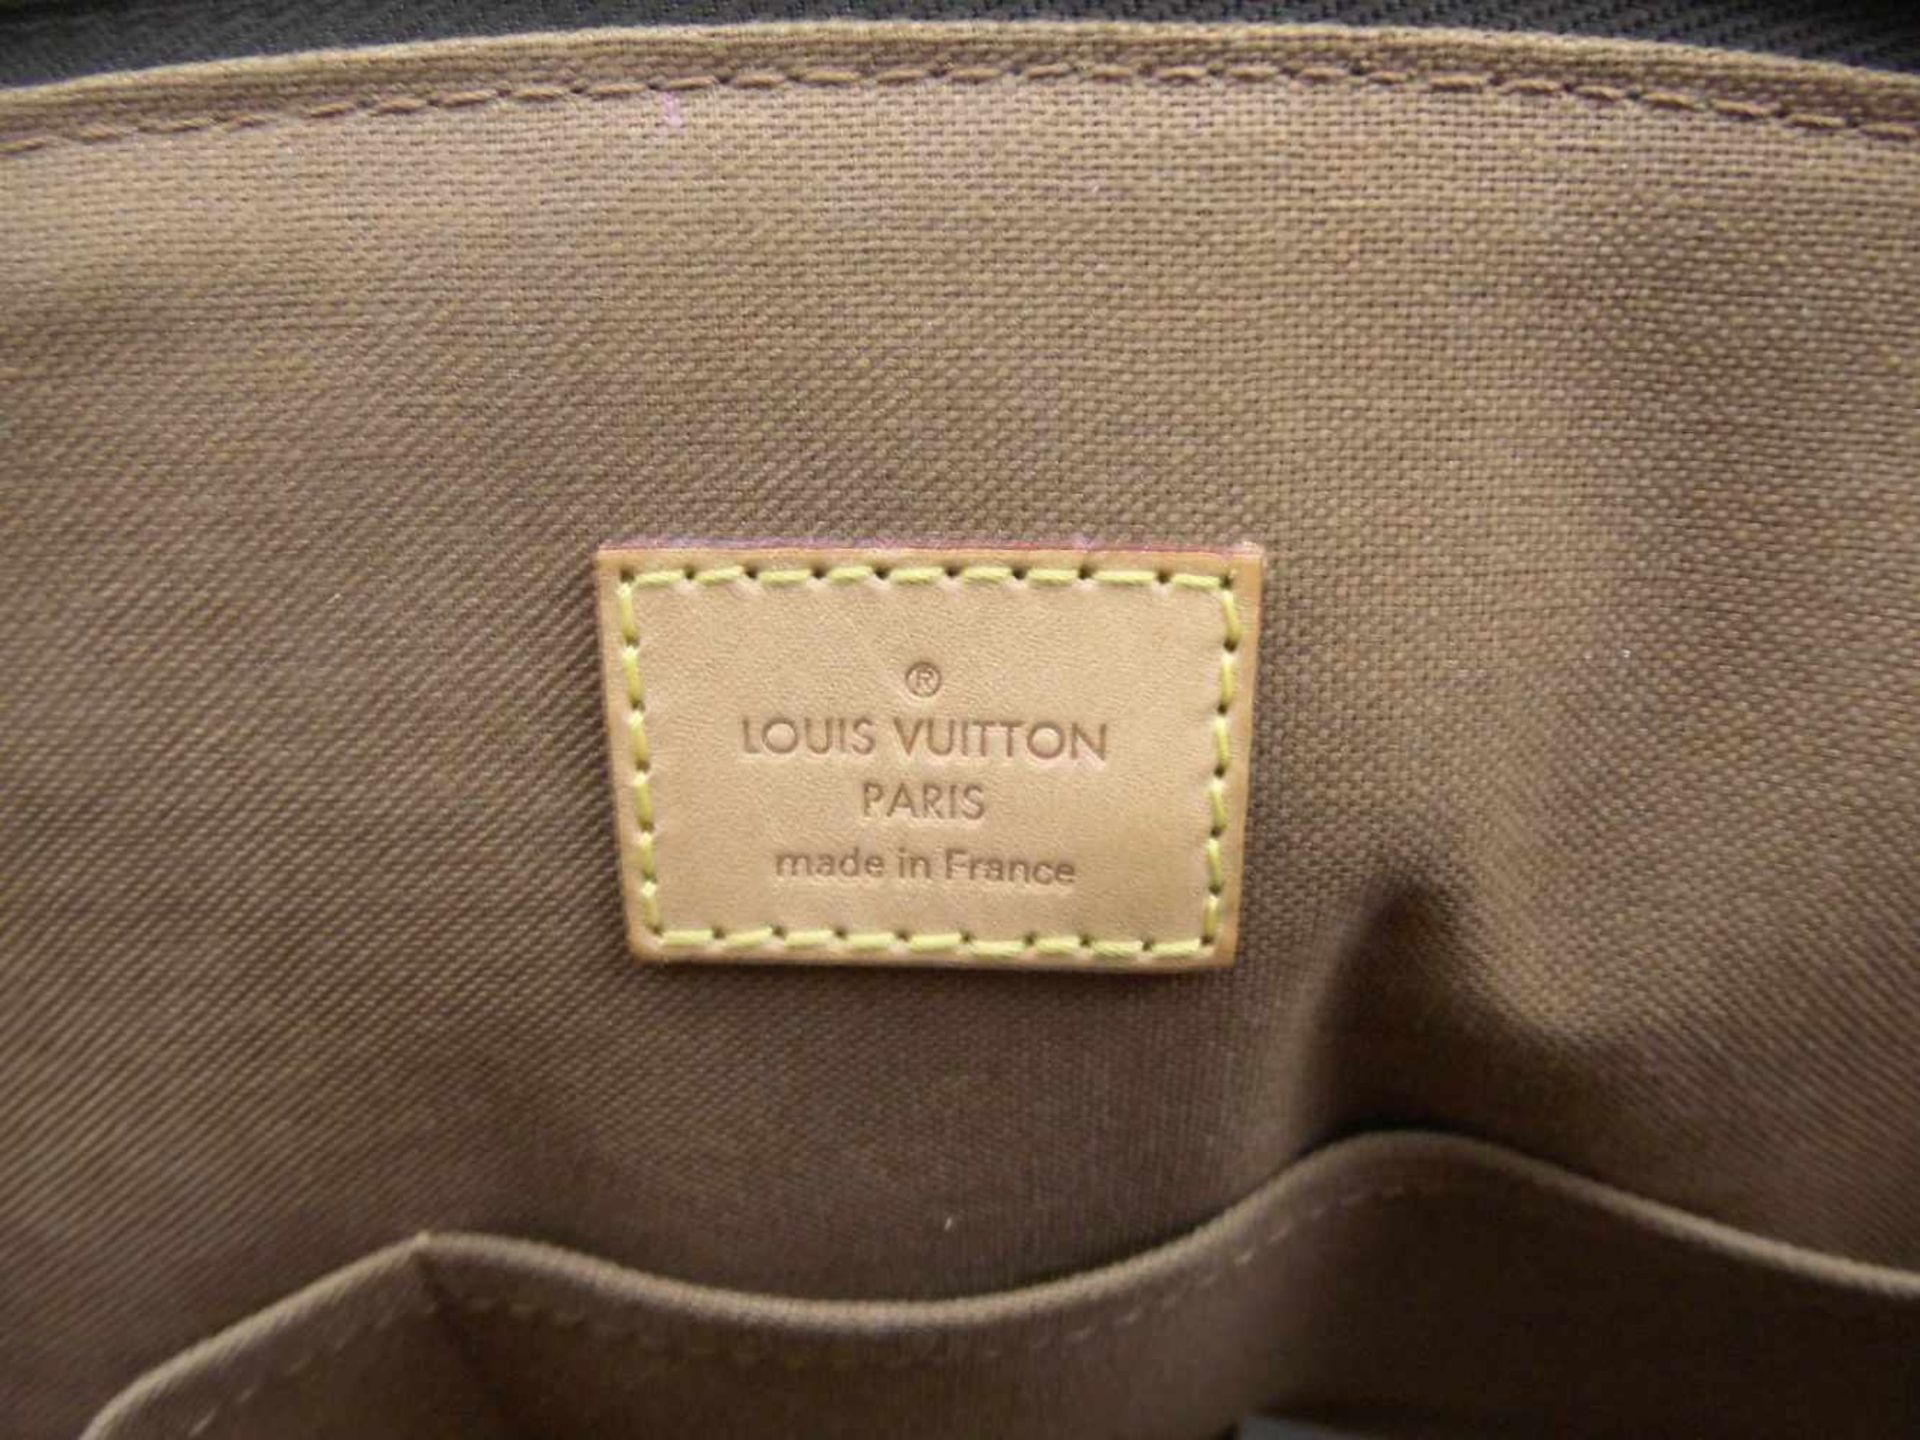 LOUIS VUITTON HANDTASCHE "MONOGRAM", Manufaktur Louis Vuitton Malletier S. A., gegründet 1854 in - Bild 5 aus 5